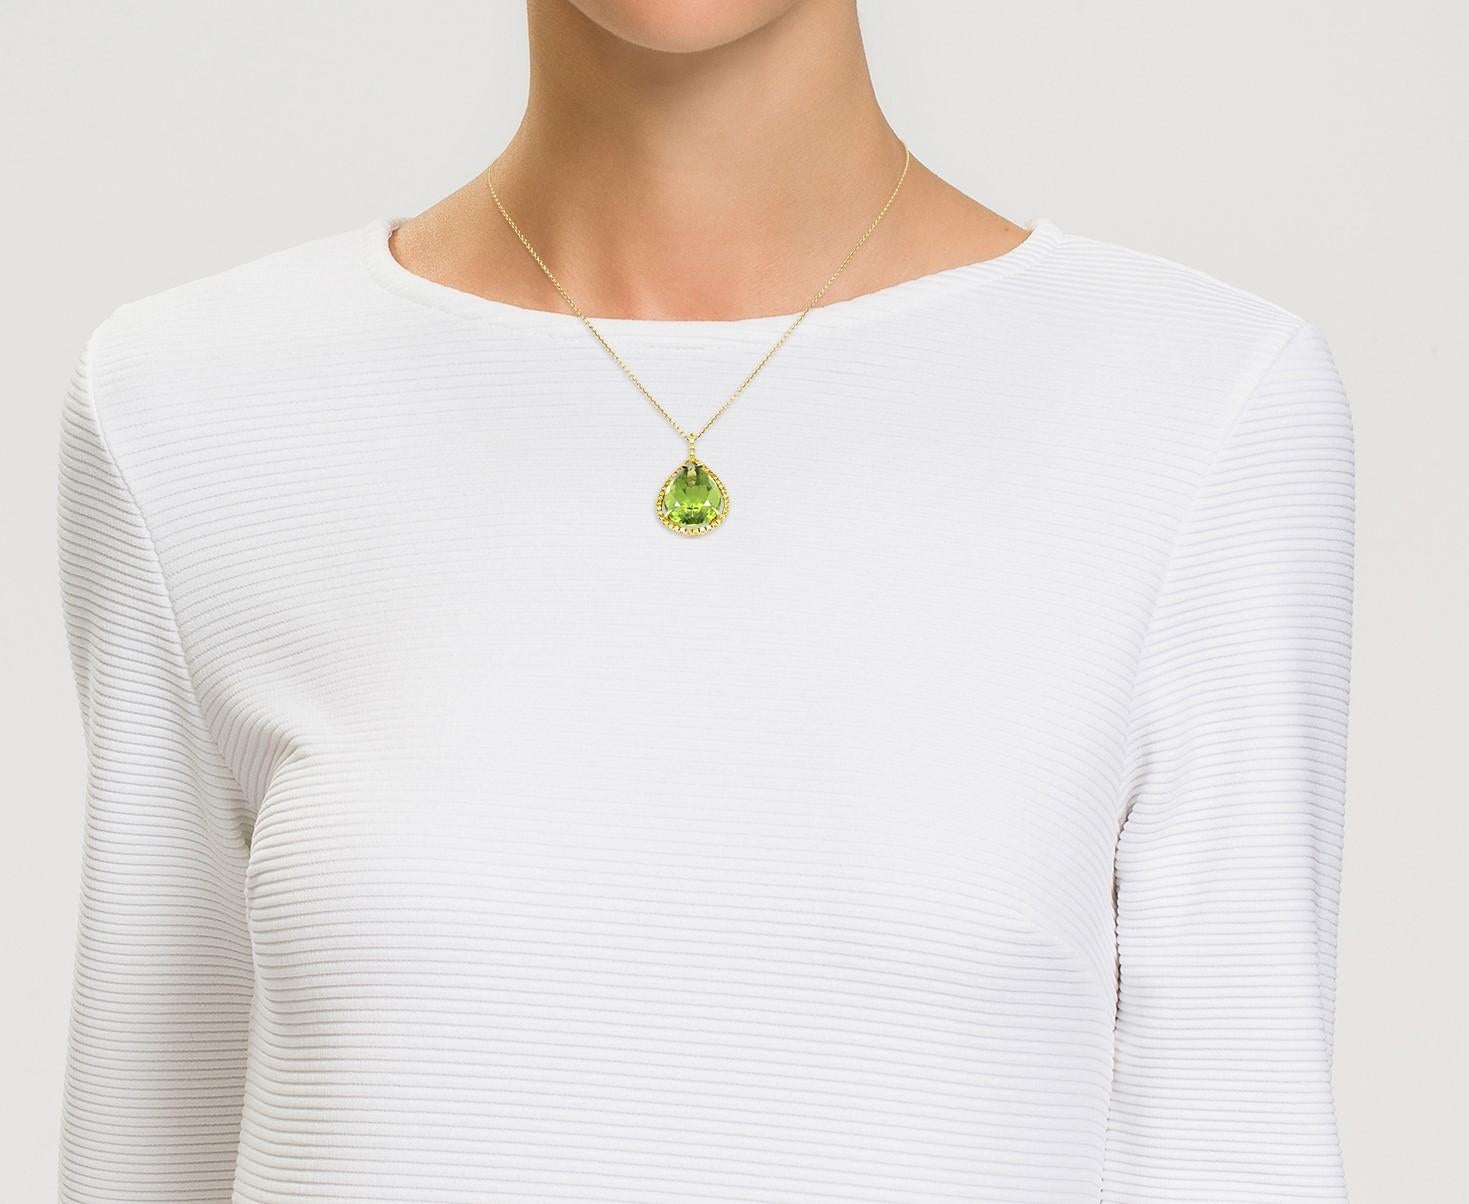 Avec sa couleur merveilleuse, son design contemporain et son savoir-faire, ce collier pendentif en péridot de David Morris réunit toutes les caractéristiques de la Maison. L'étonnante goutte de péridot vert olive est suspendue dans une monture en or